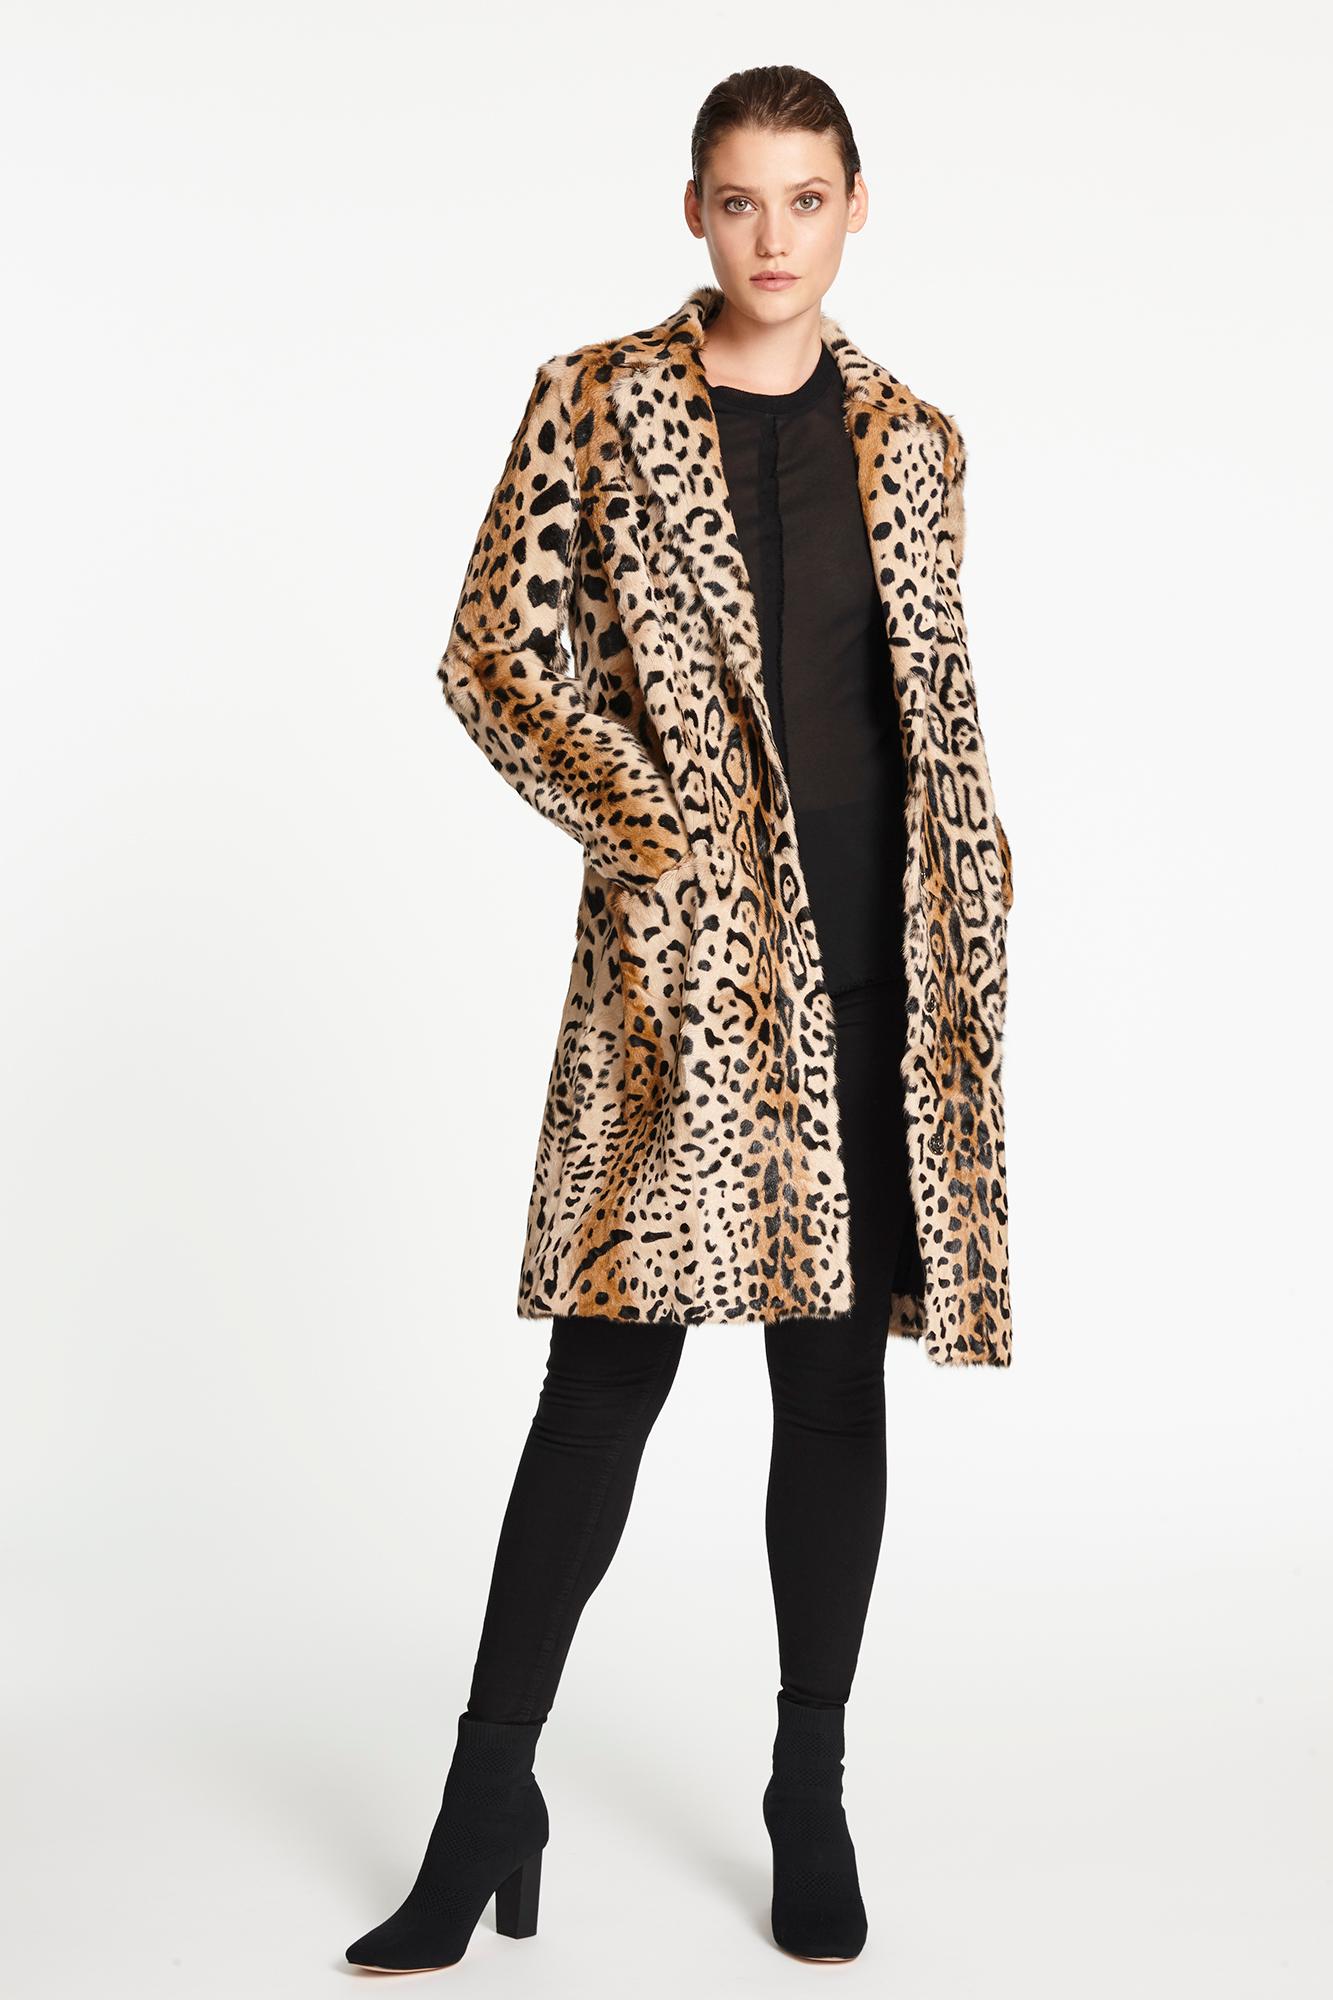 Brown Verheyen London Leopard Print Coat in Natural Goat Hair Fur UK 12 - Brand New